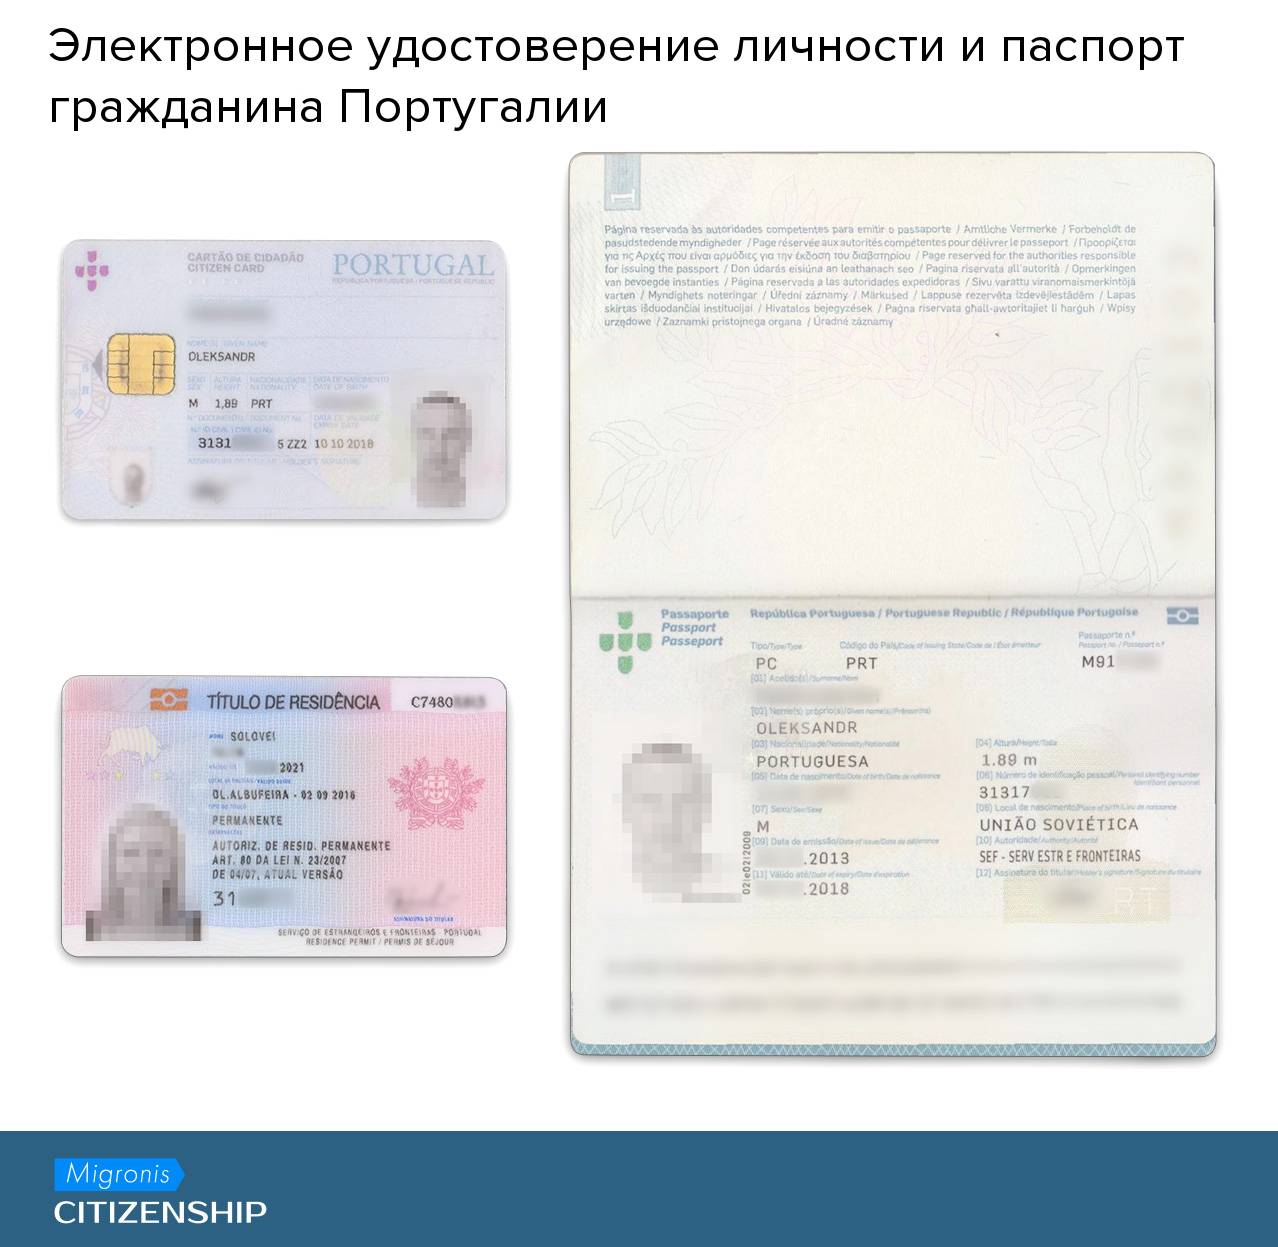 Получение второго гражданства россии